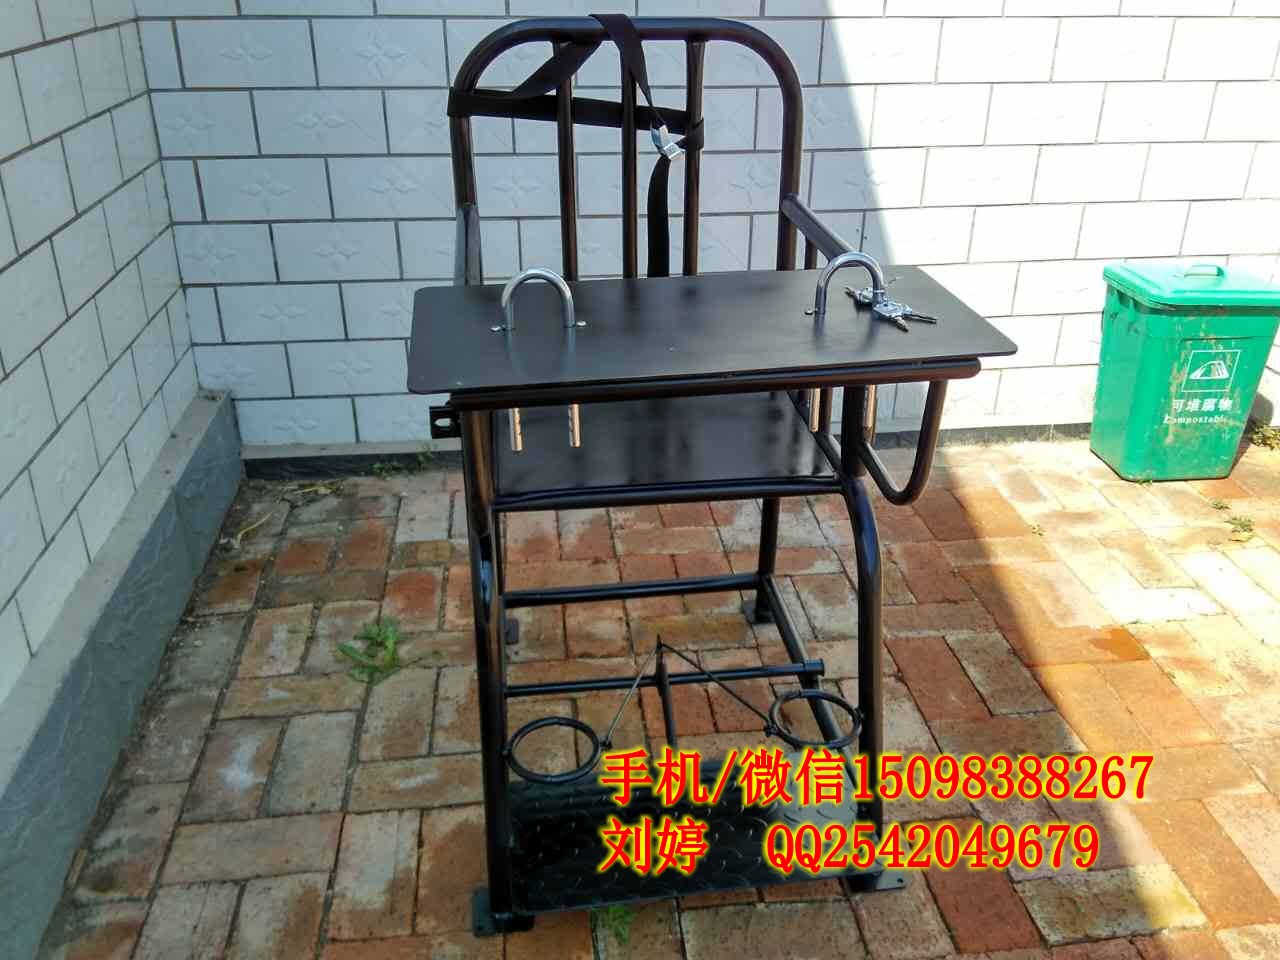 山东省警用铁质方形审讯椅,大量现货